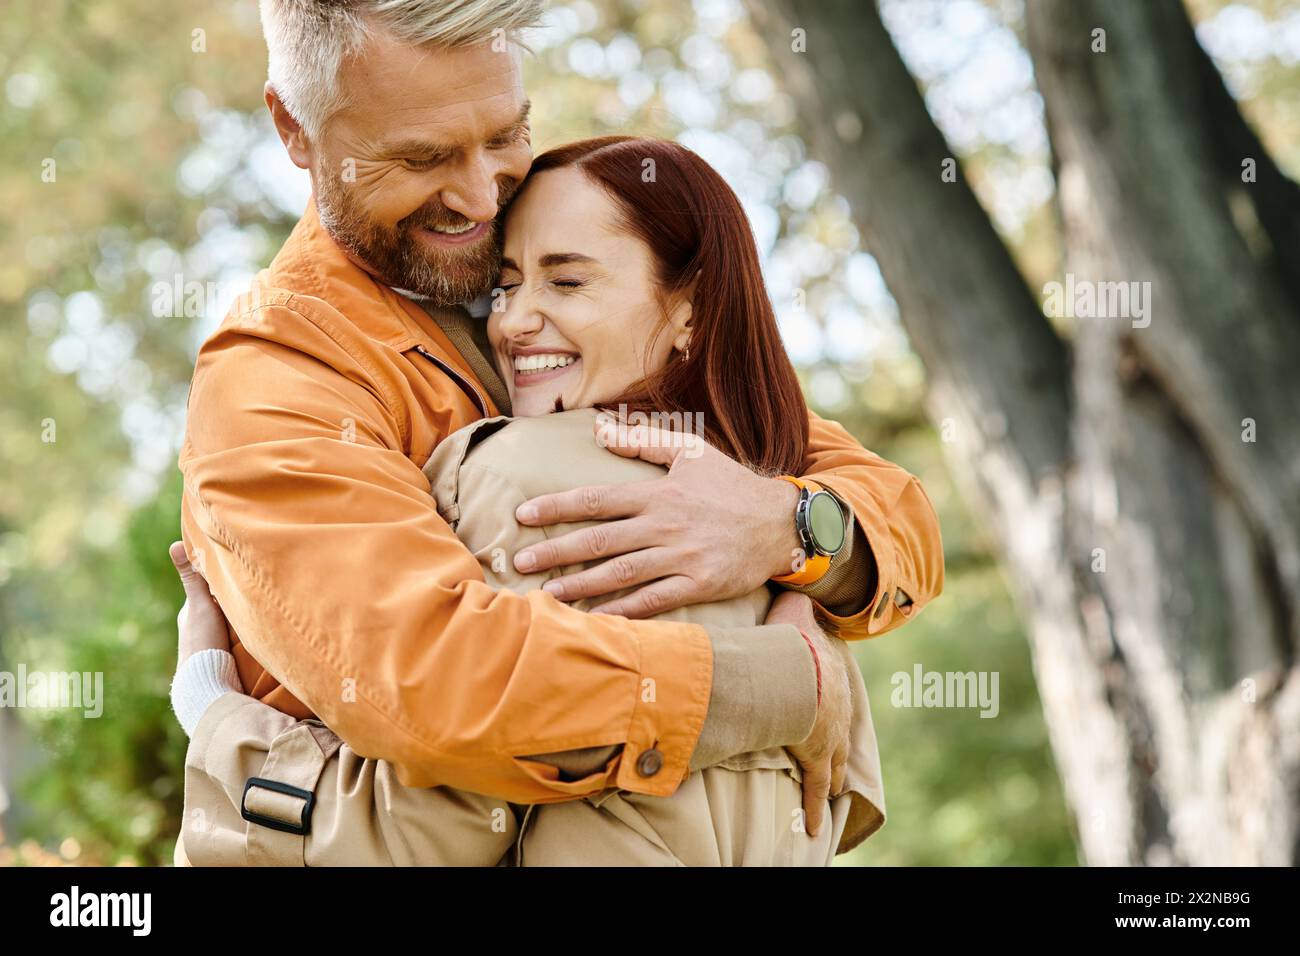 Ein Mann umarmt eine Frau zärtlich in einem Park voller üppiger Grünflächen. Stockfoto